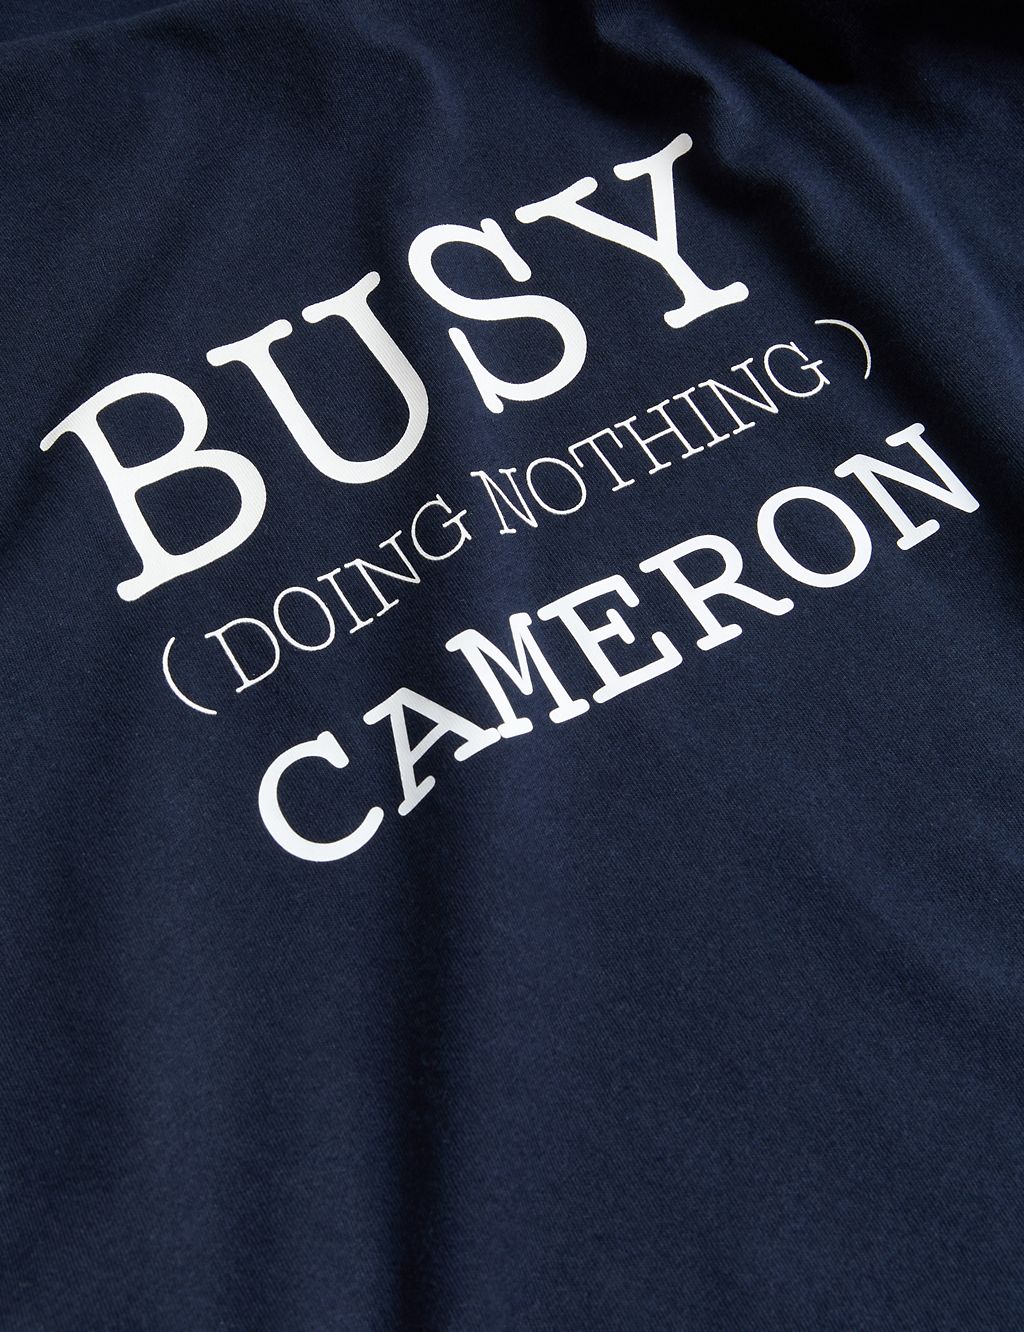 Personalised Men's Busy Slogan Pyjama Top 2 of 2